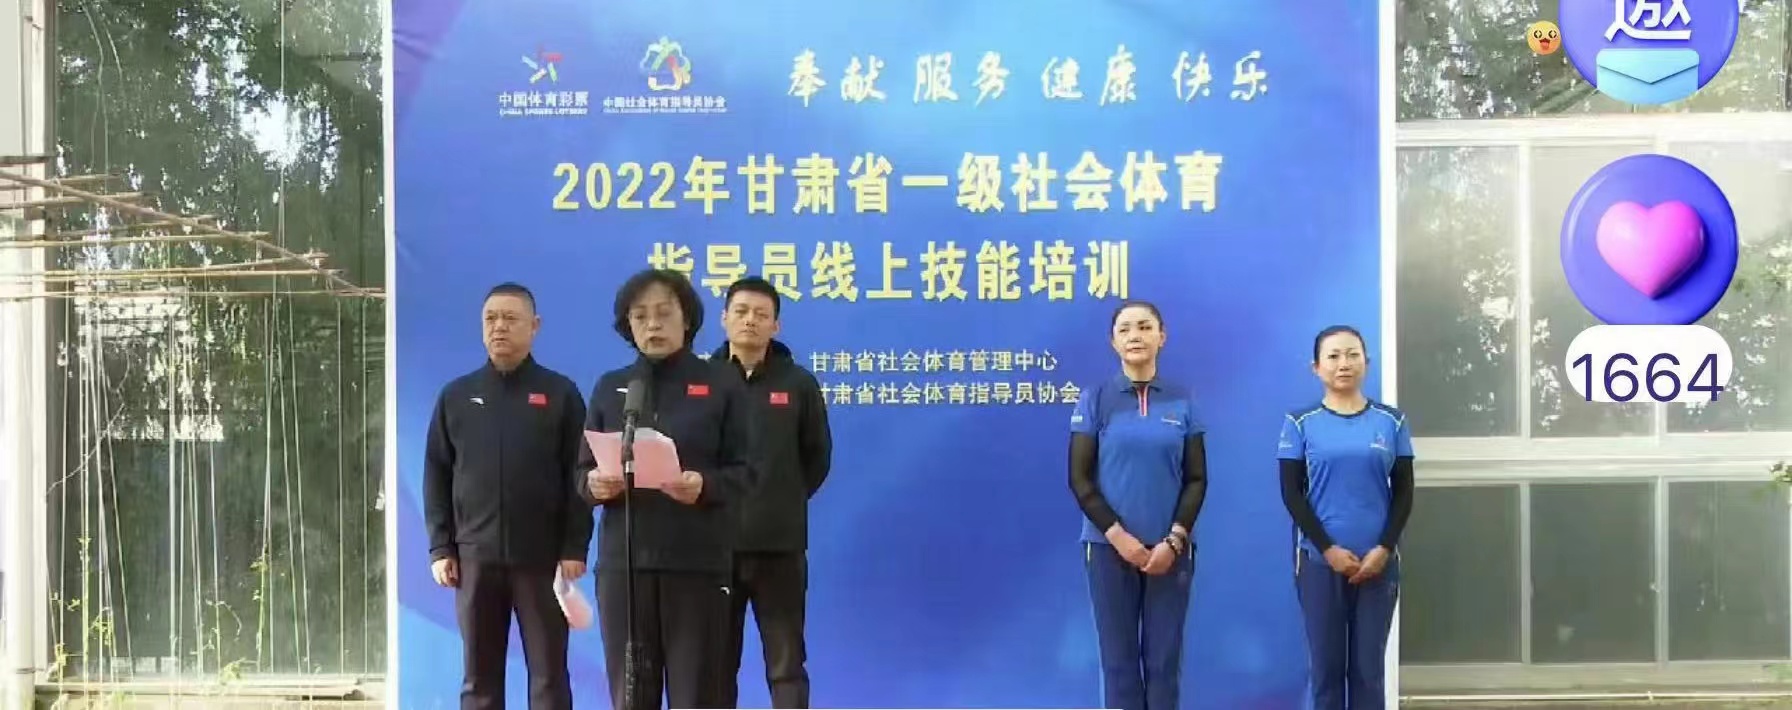 2022年甘肃省一级社会体育指导员线上培训班（中片区）顺利开班